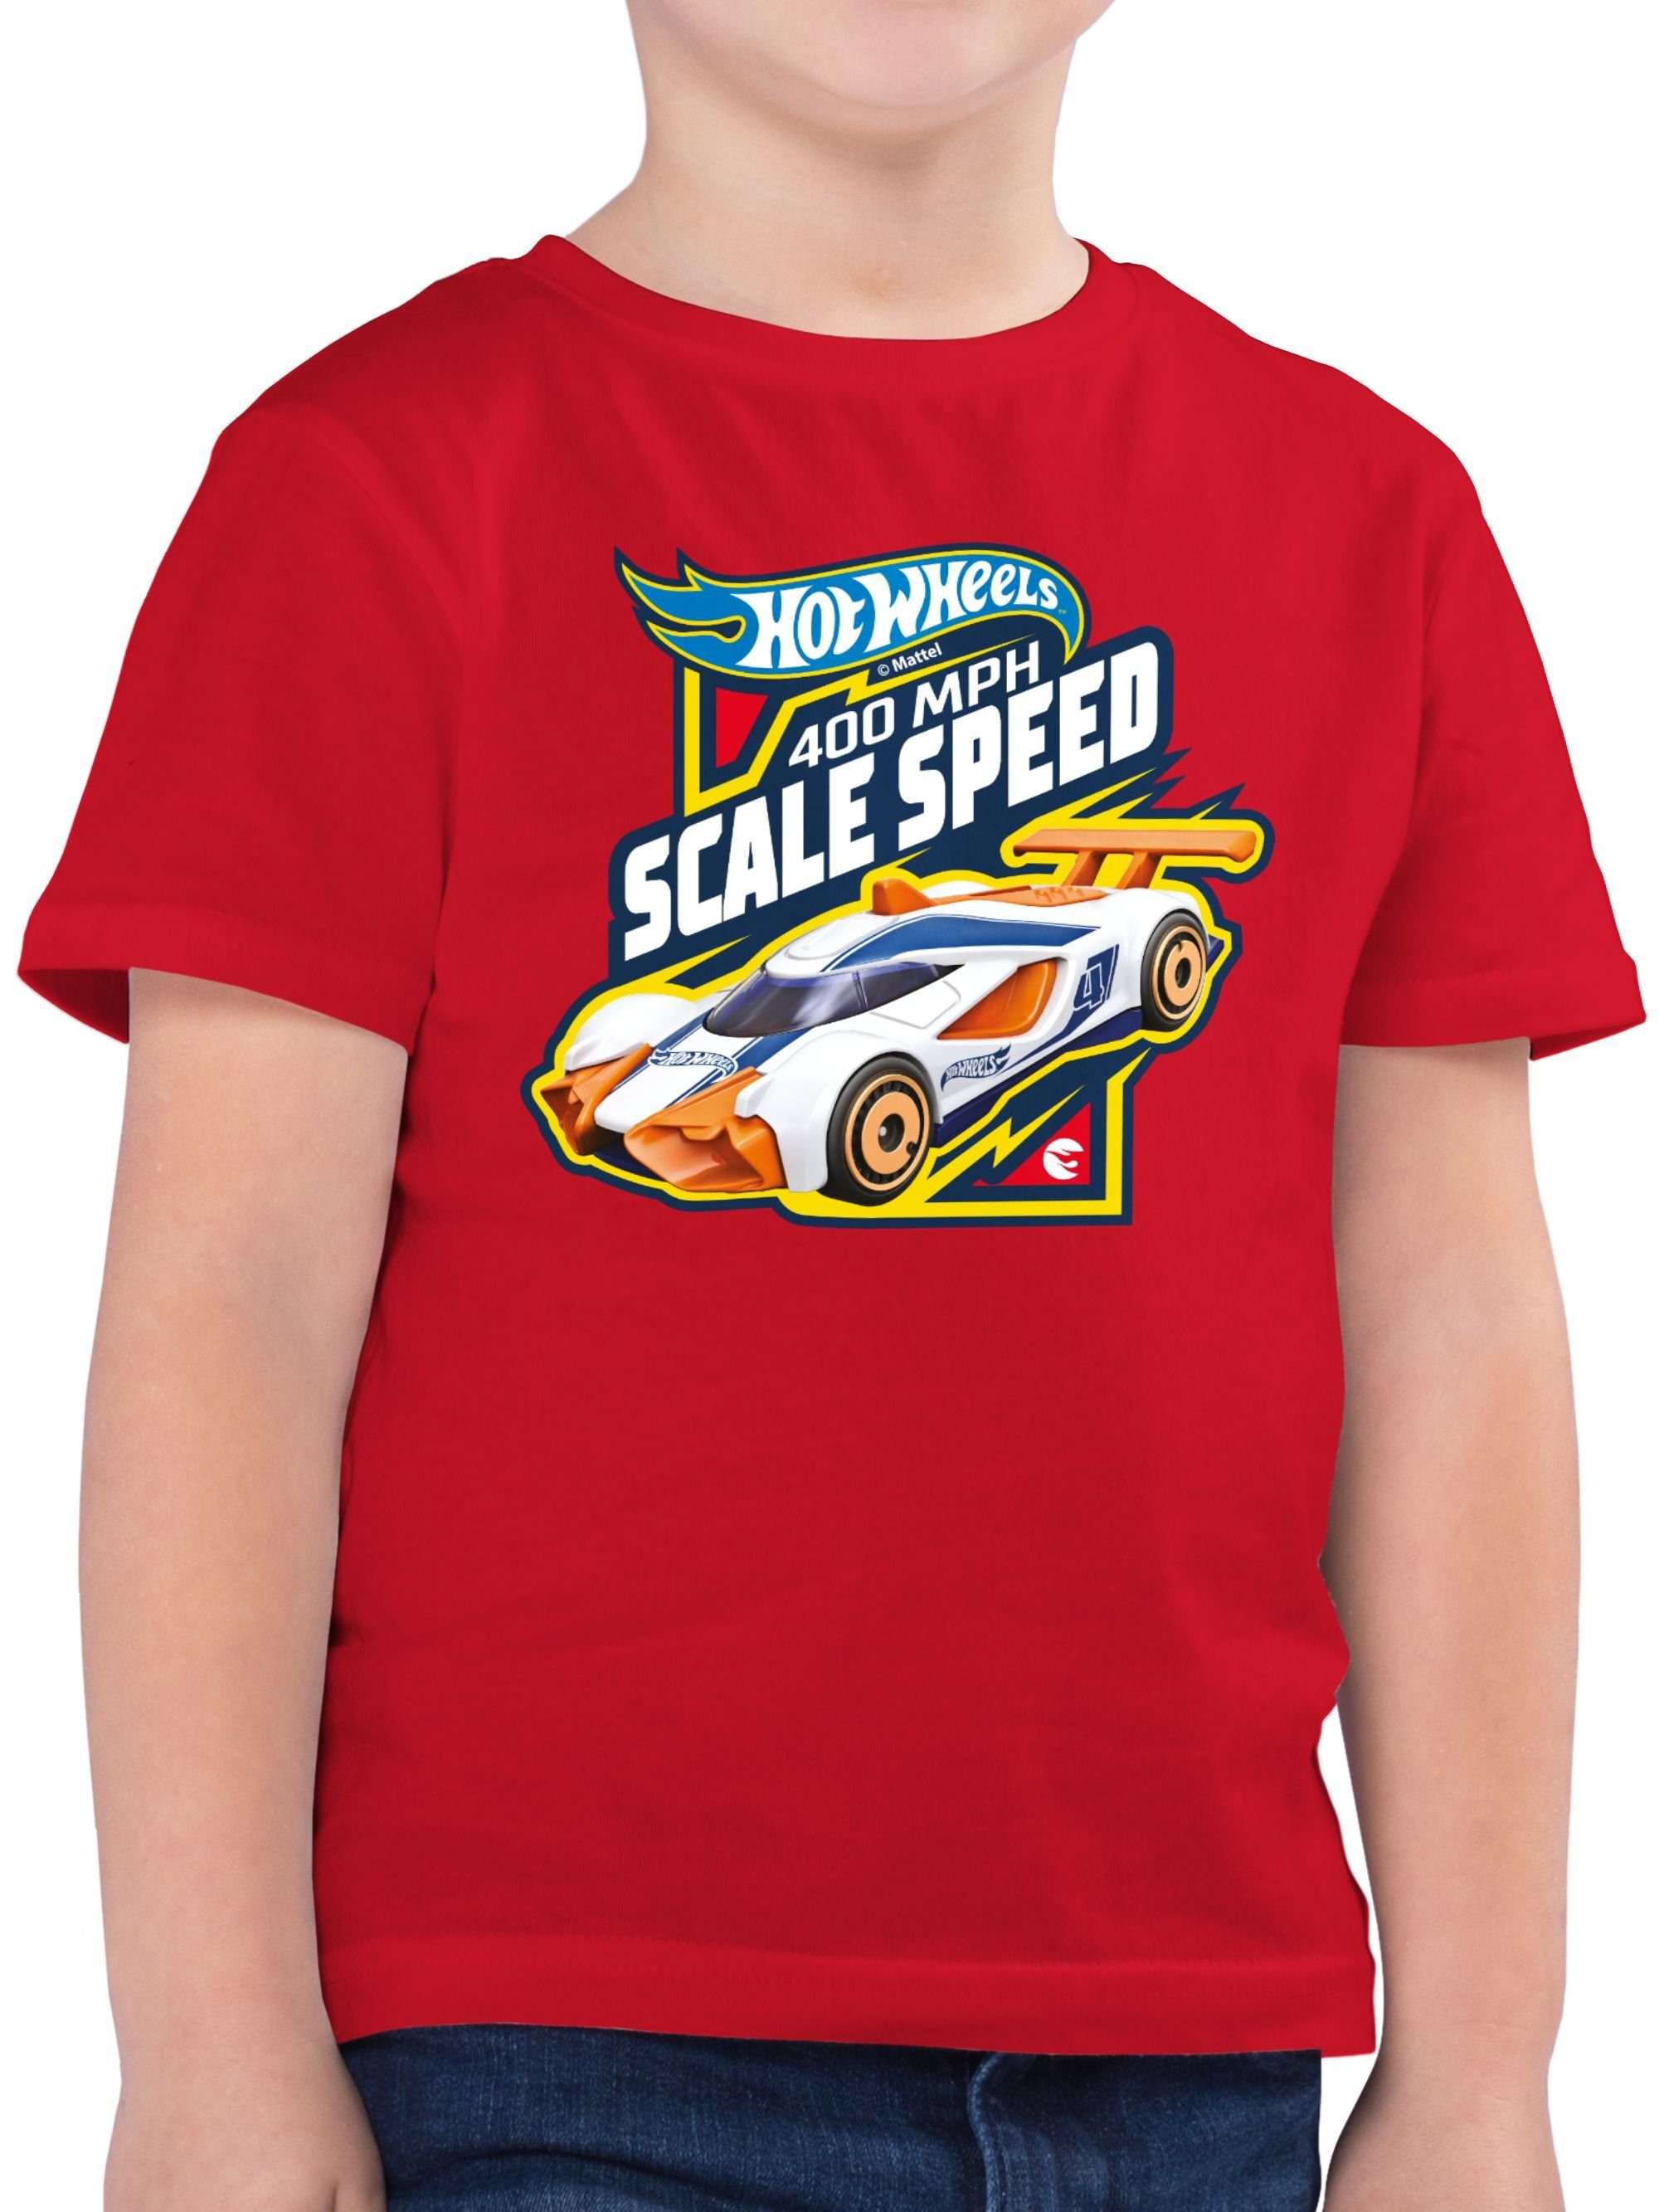 Shirtracer T-Shirt 400MPH Scale Speed Hot Wheels Jungen 02 Rot